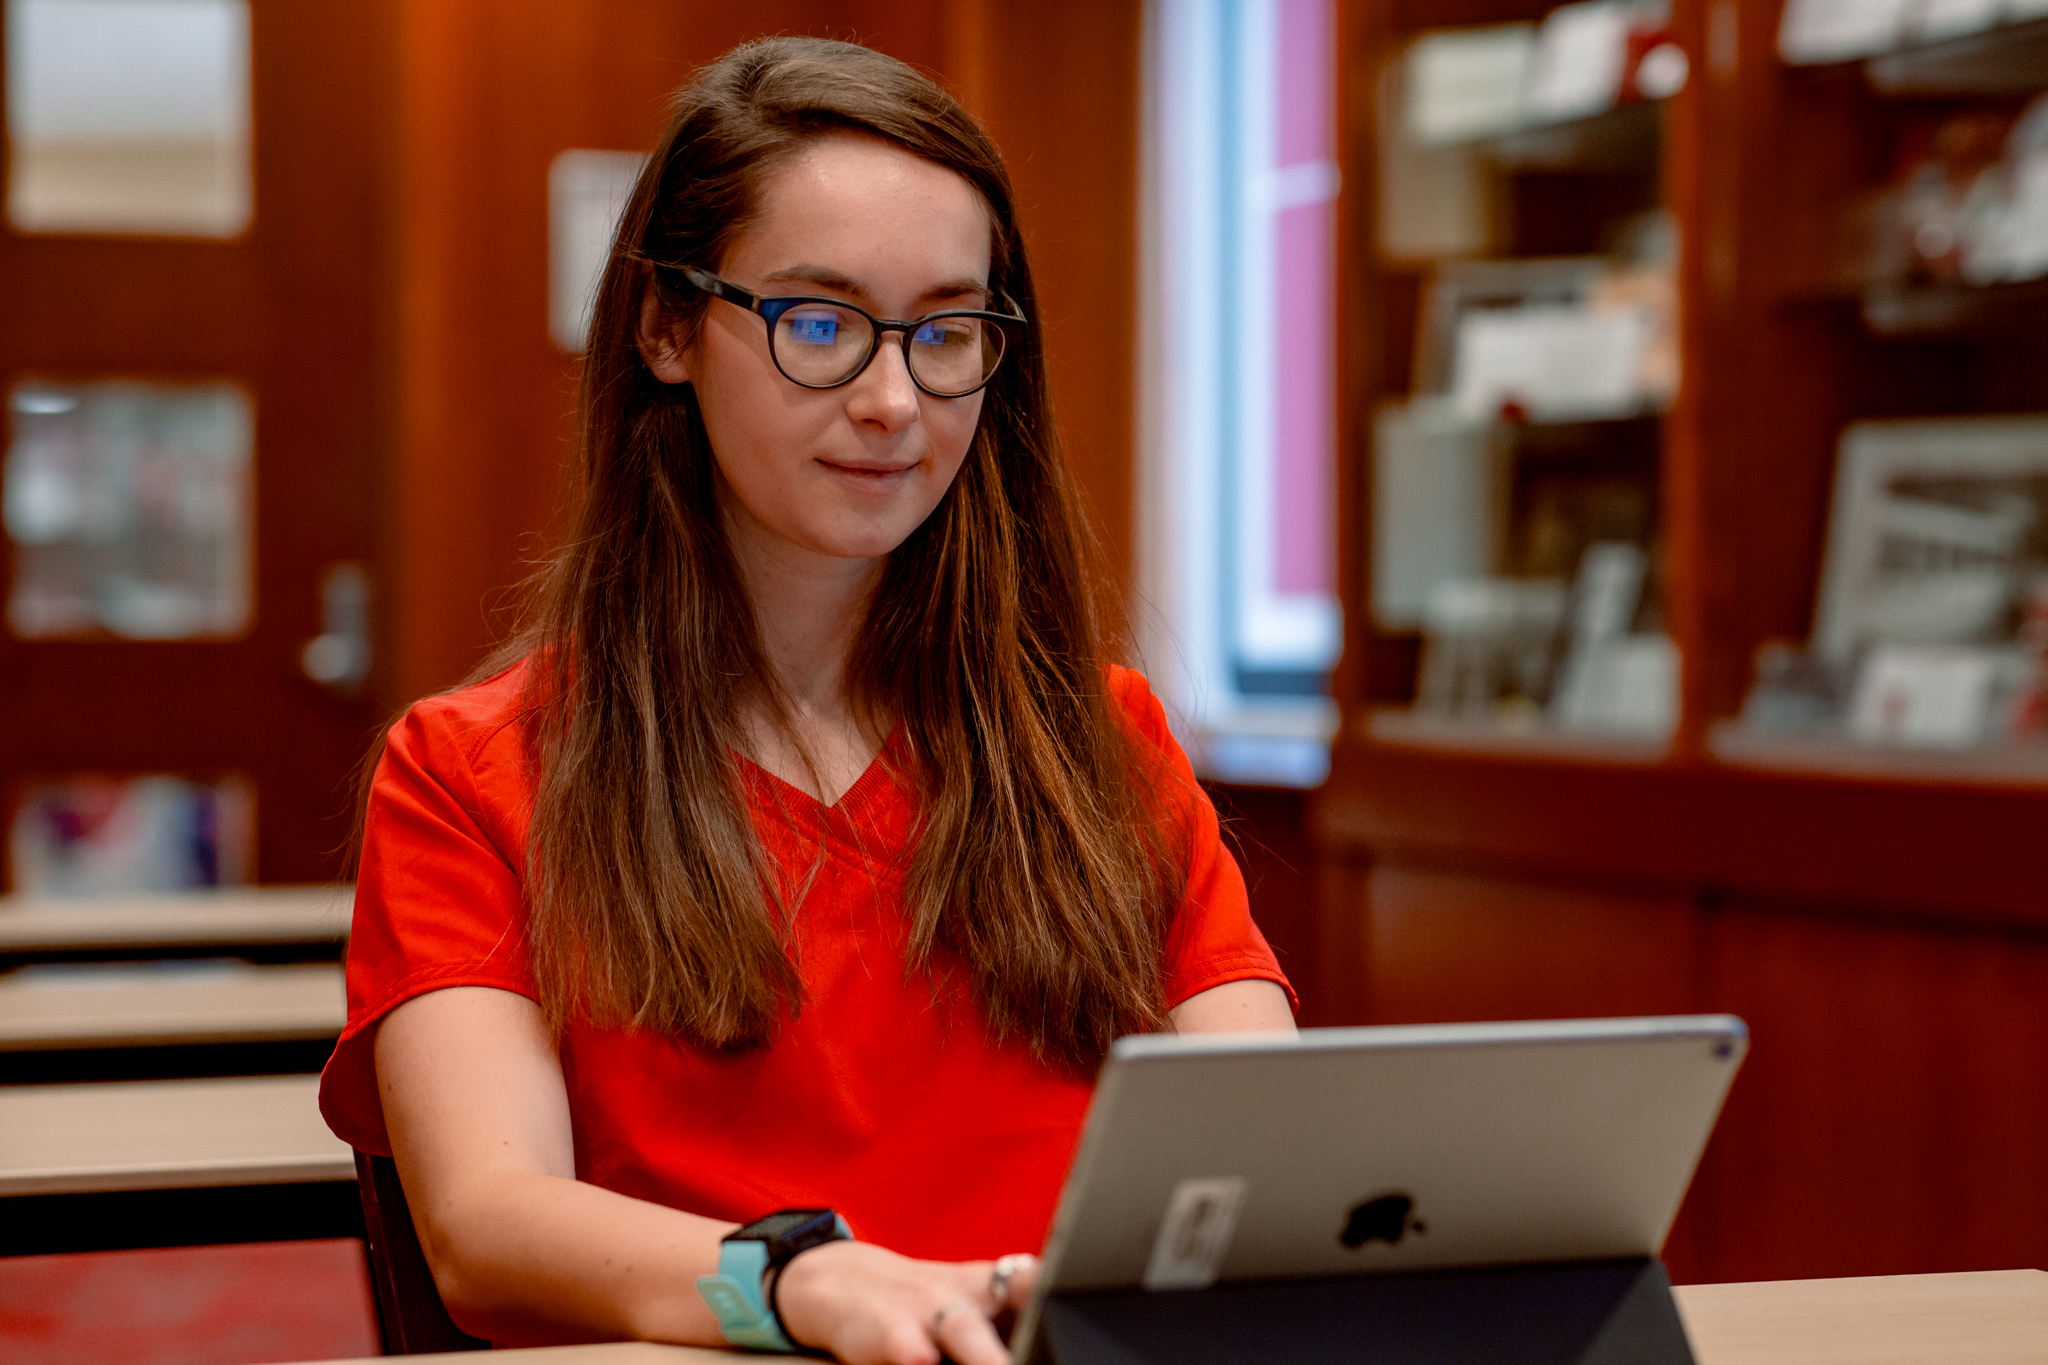 A nursing student in red scrubs completes work for her online nursing program on a tablet.